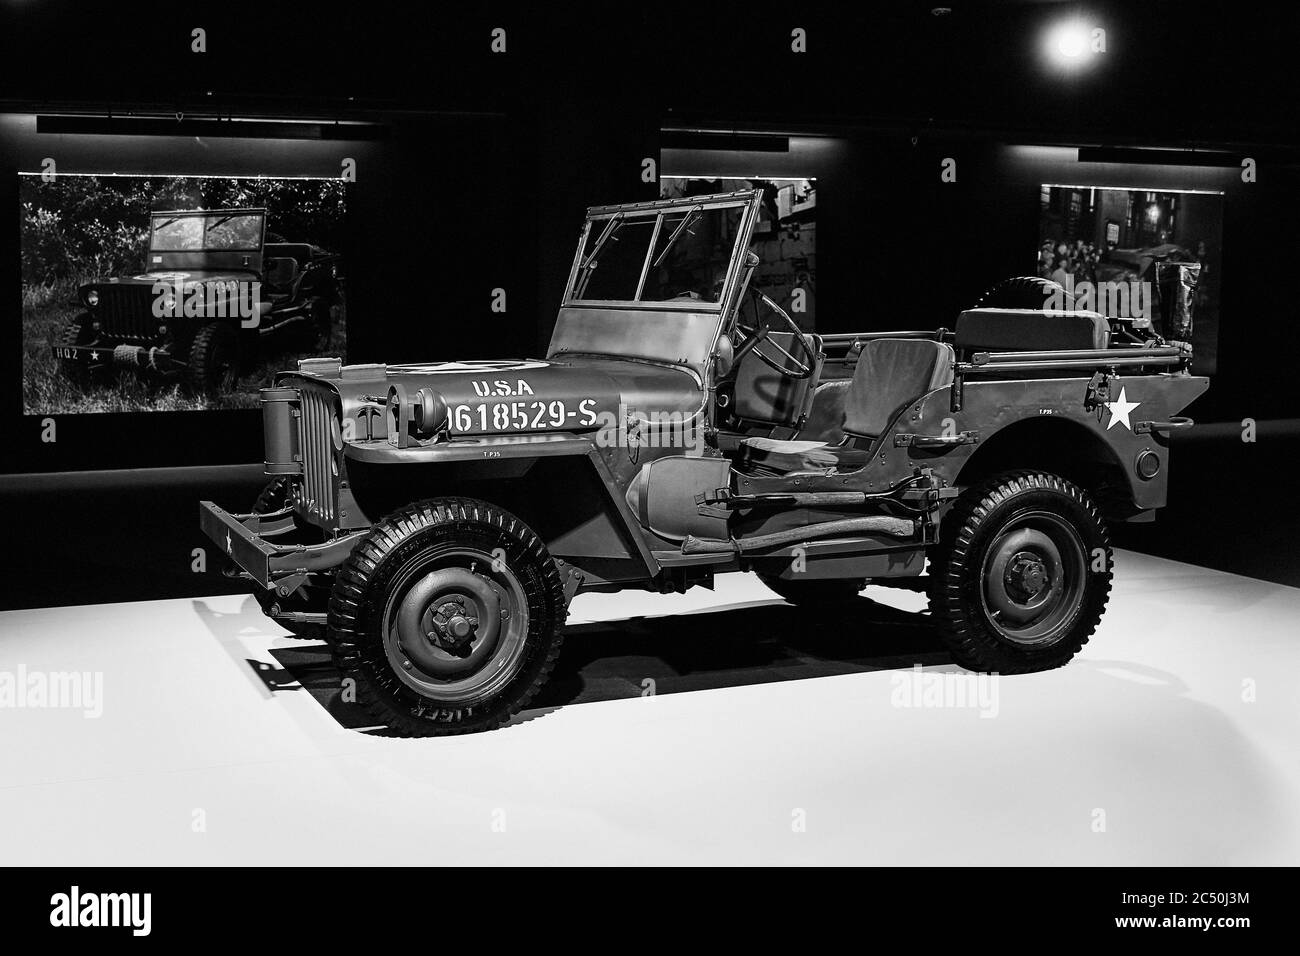 Willys MB 1944. US-Armee-LKW. Geländewagen des zweiten Weltkrieges. Retro-Auto auf Ausstellung. Ausstellung für Oldtimer - Heydar Aliyev Centre, Stockfoto